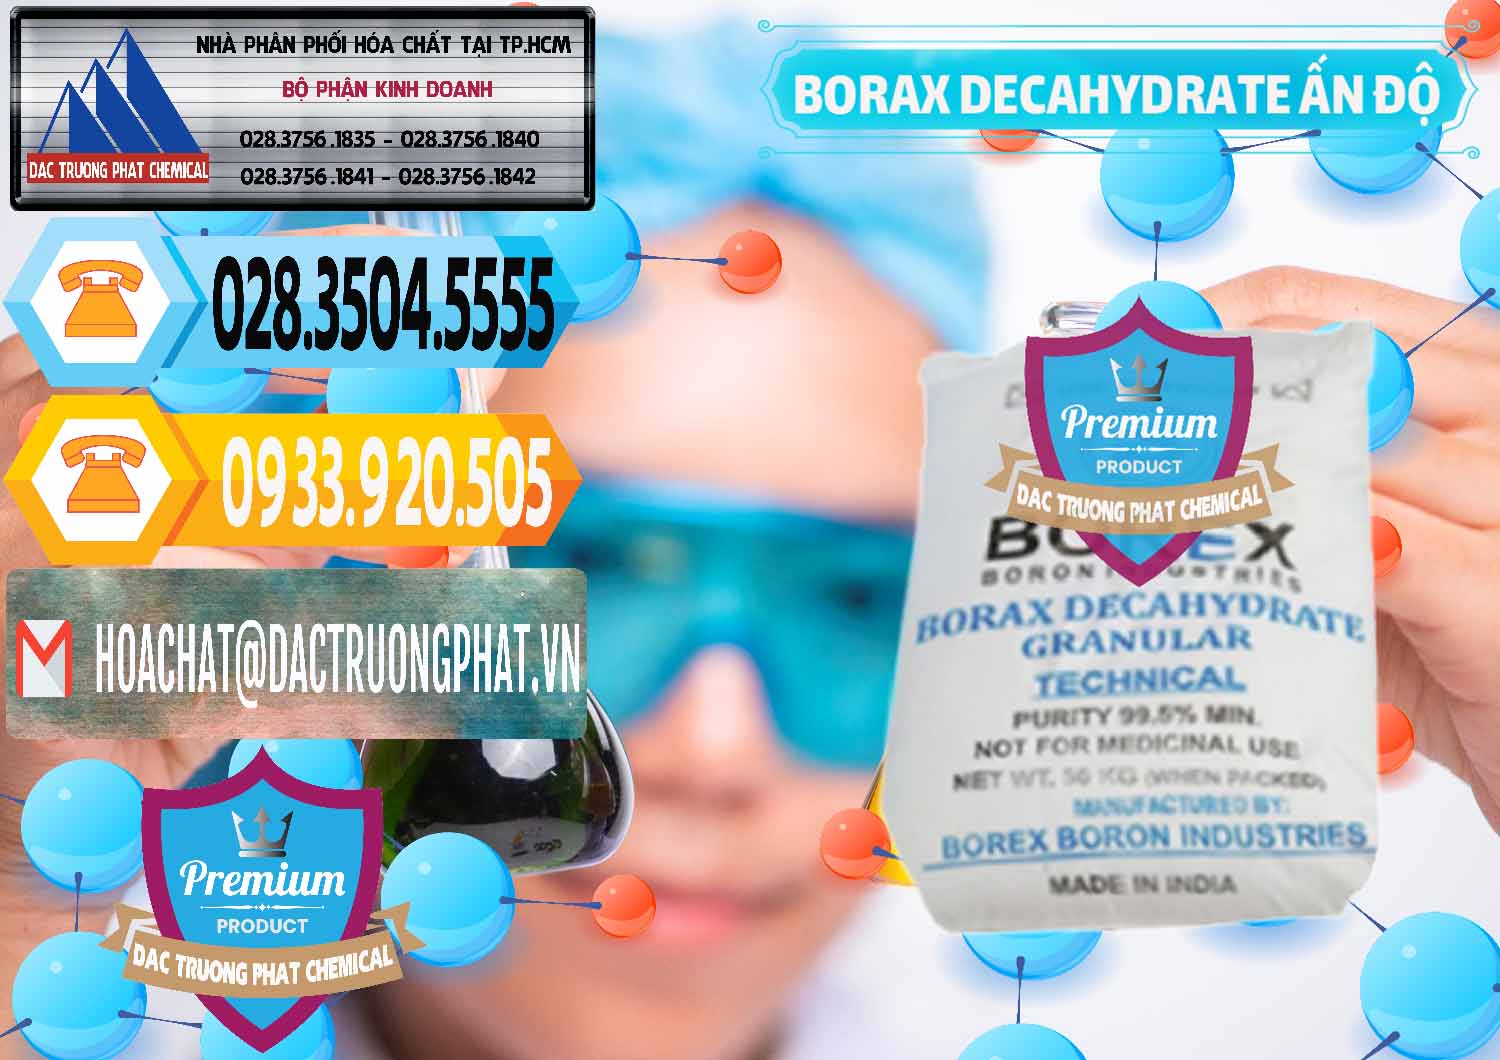 Cty chuyên kinh doanh ( bán ) Borax Decahydrate Ấn Độ India - 0449 - Công ty phân phối và cung ứng hóa chất tại TP.HCM - hoachattayrua.net